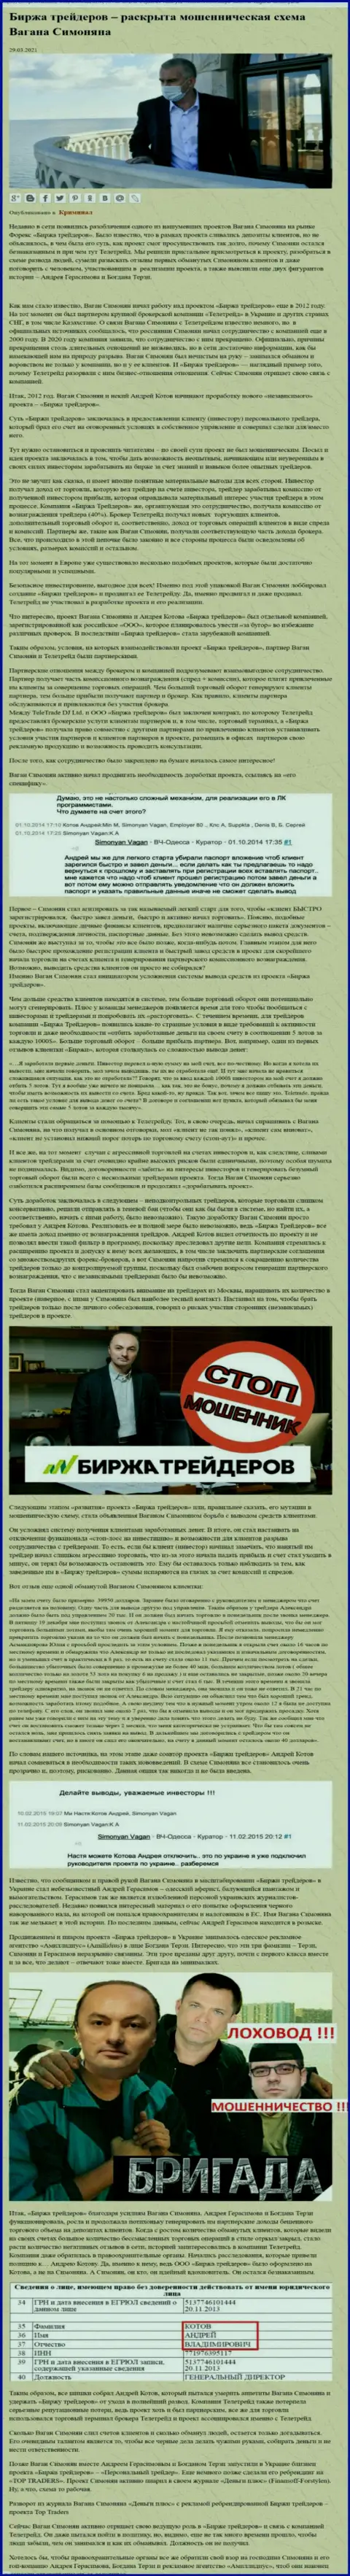 Пиаром конторы B Traders, тесно связанной с мошенниками ТелеТрейд, также занимался Терзи Богдан Михайлович